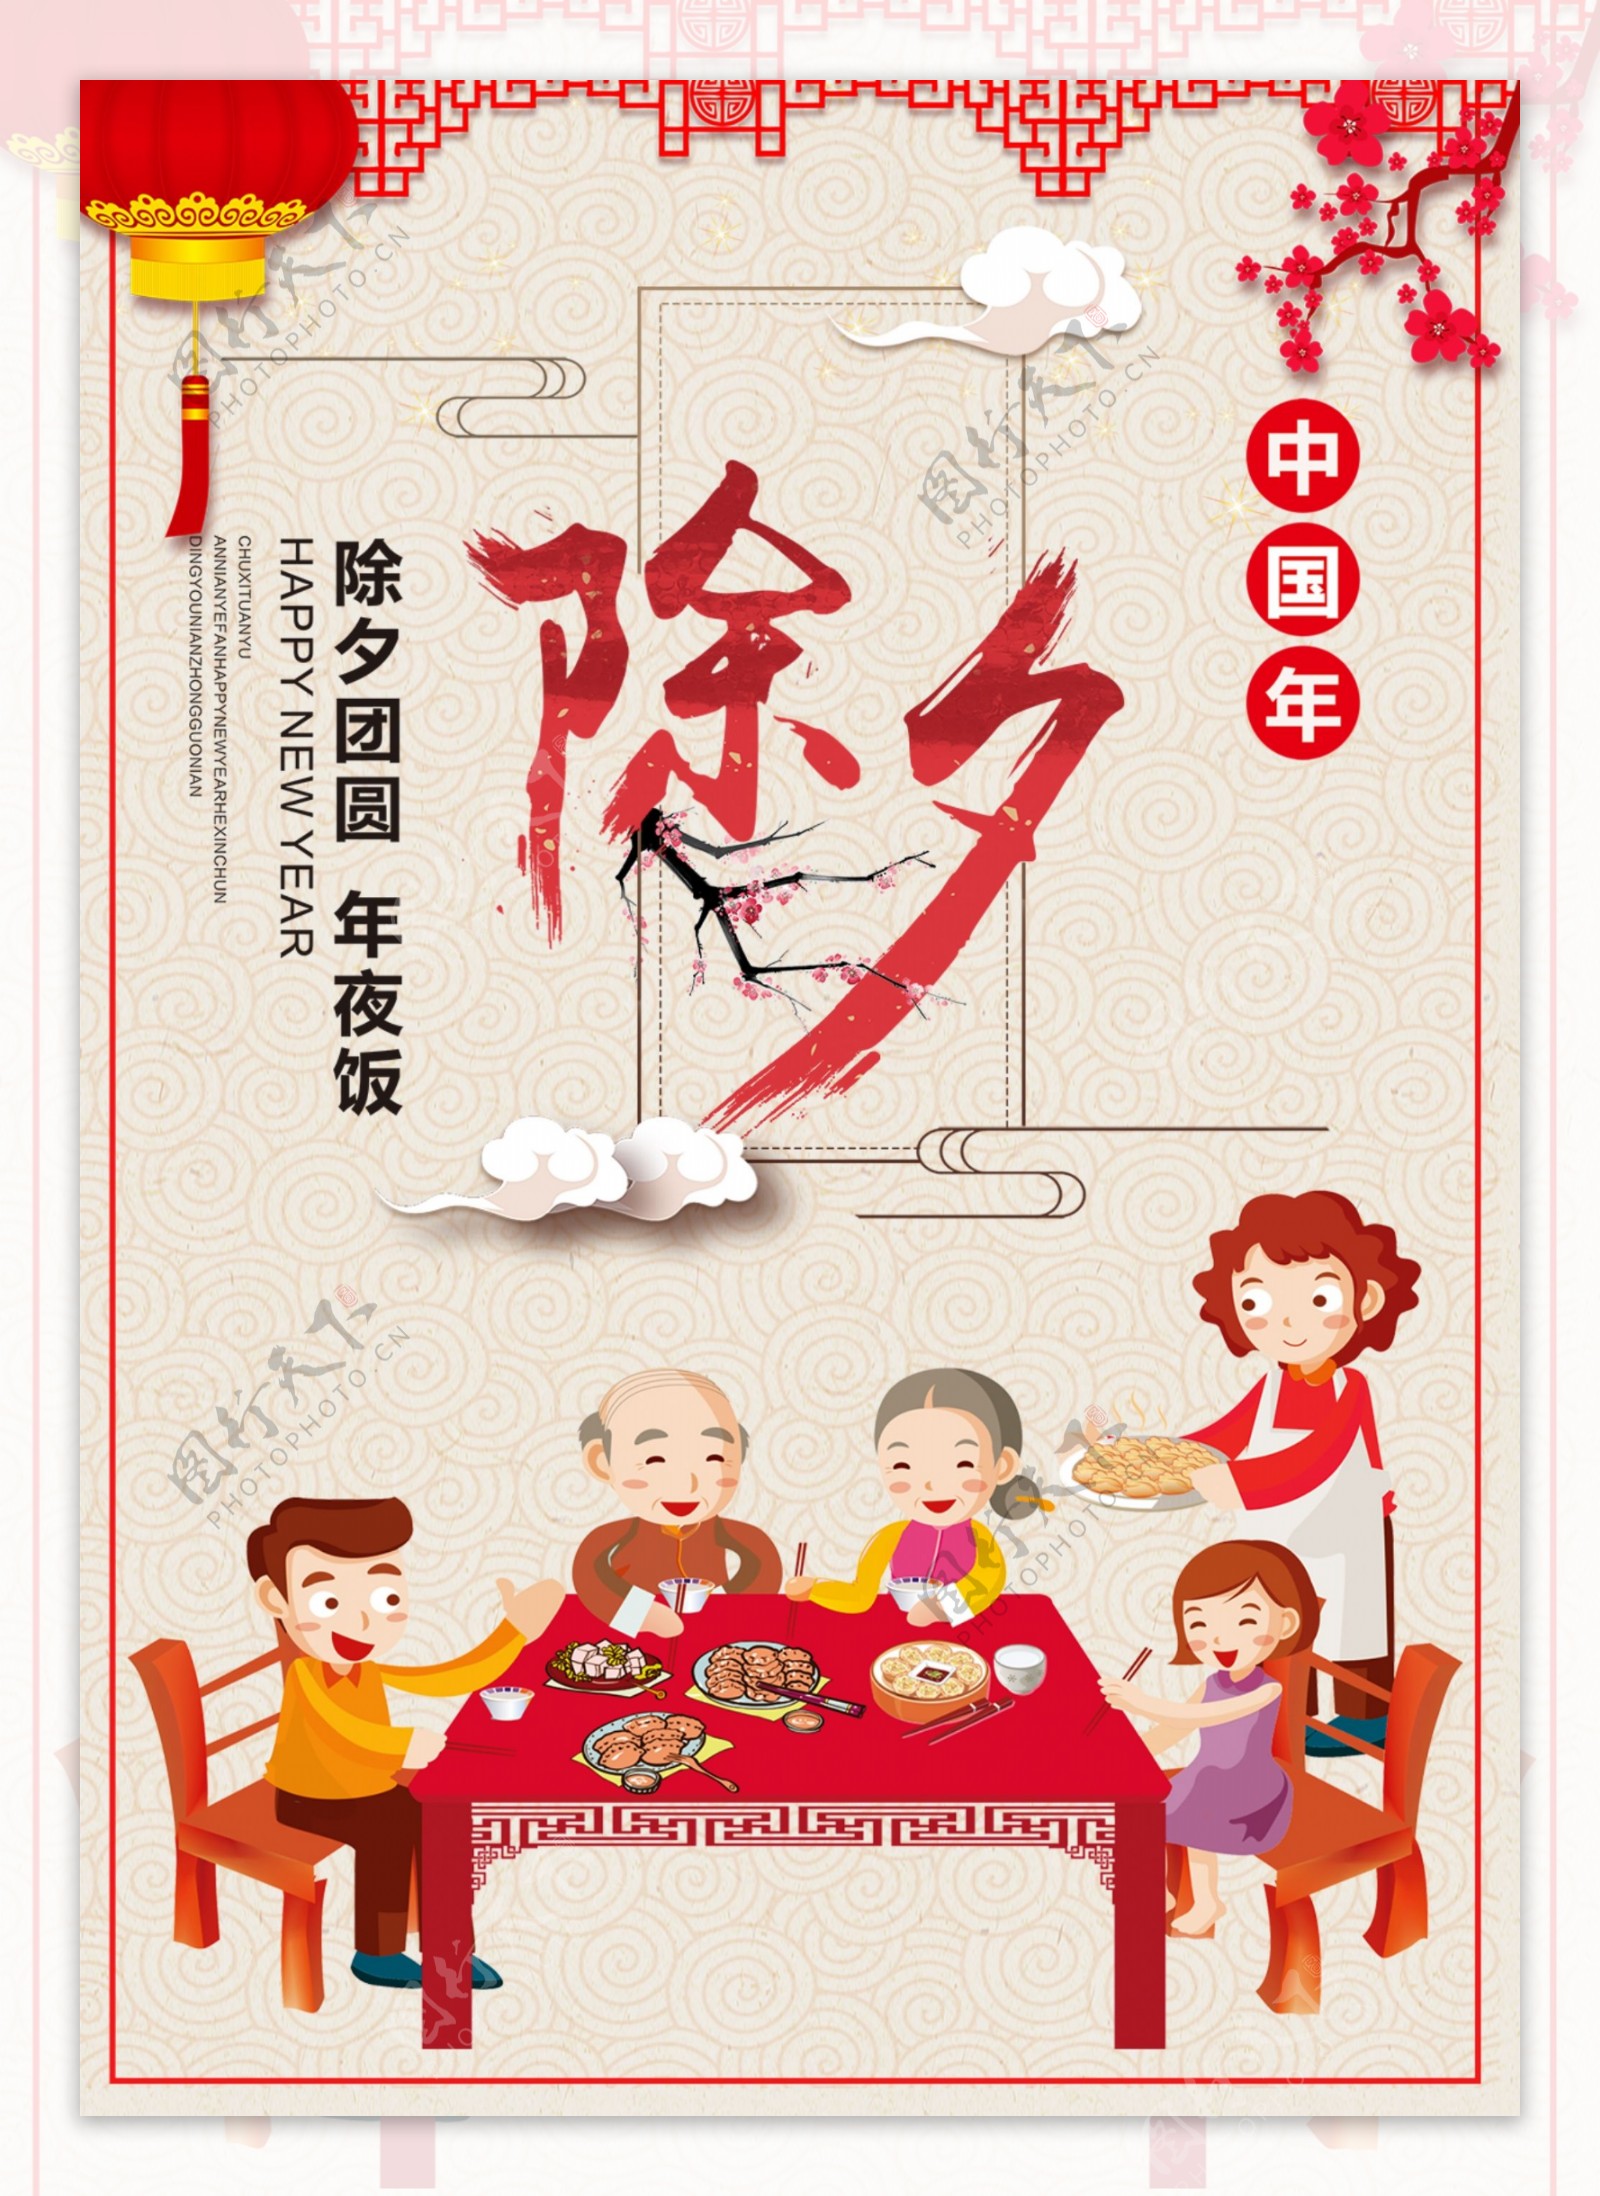 2018年新春除夕节日宣传海报设计